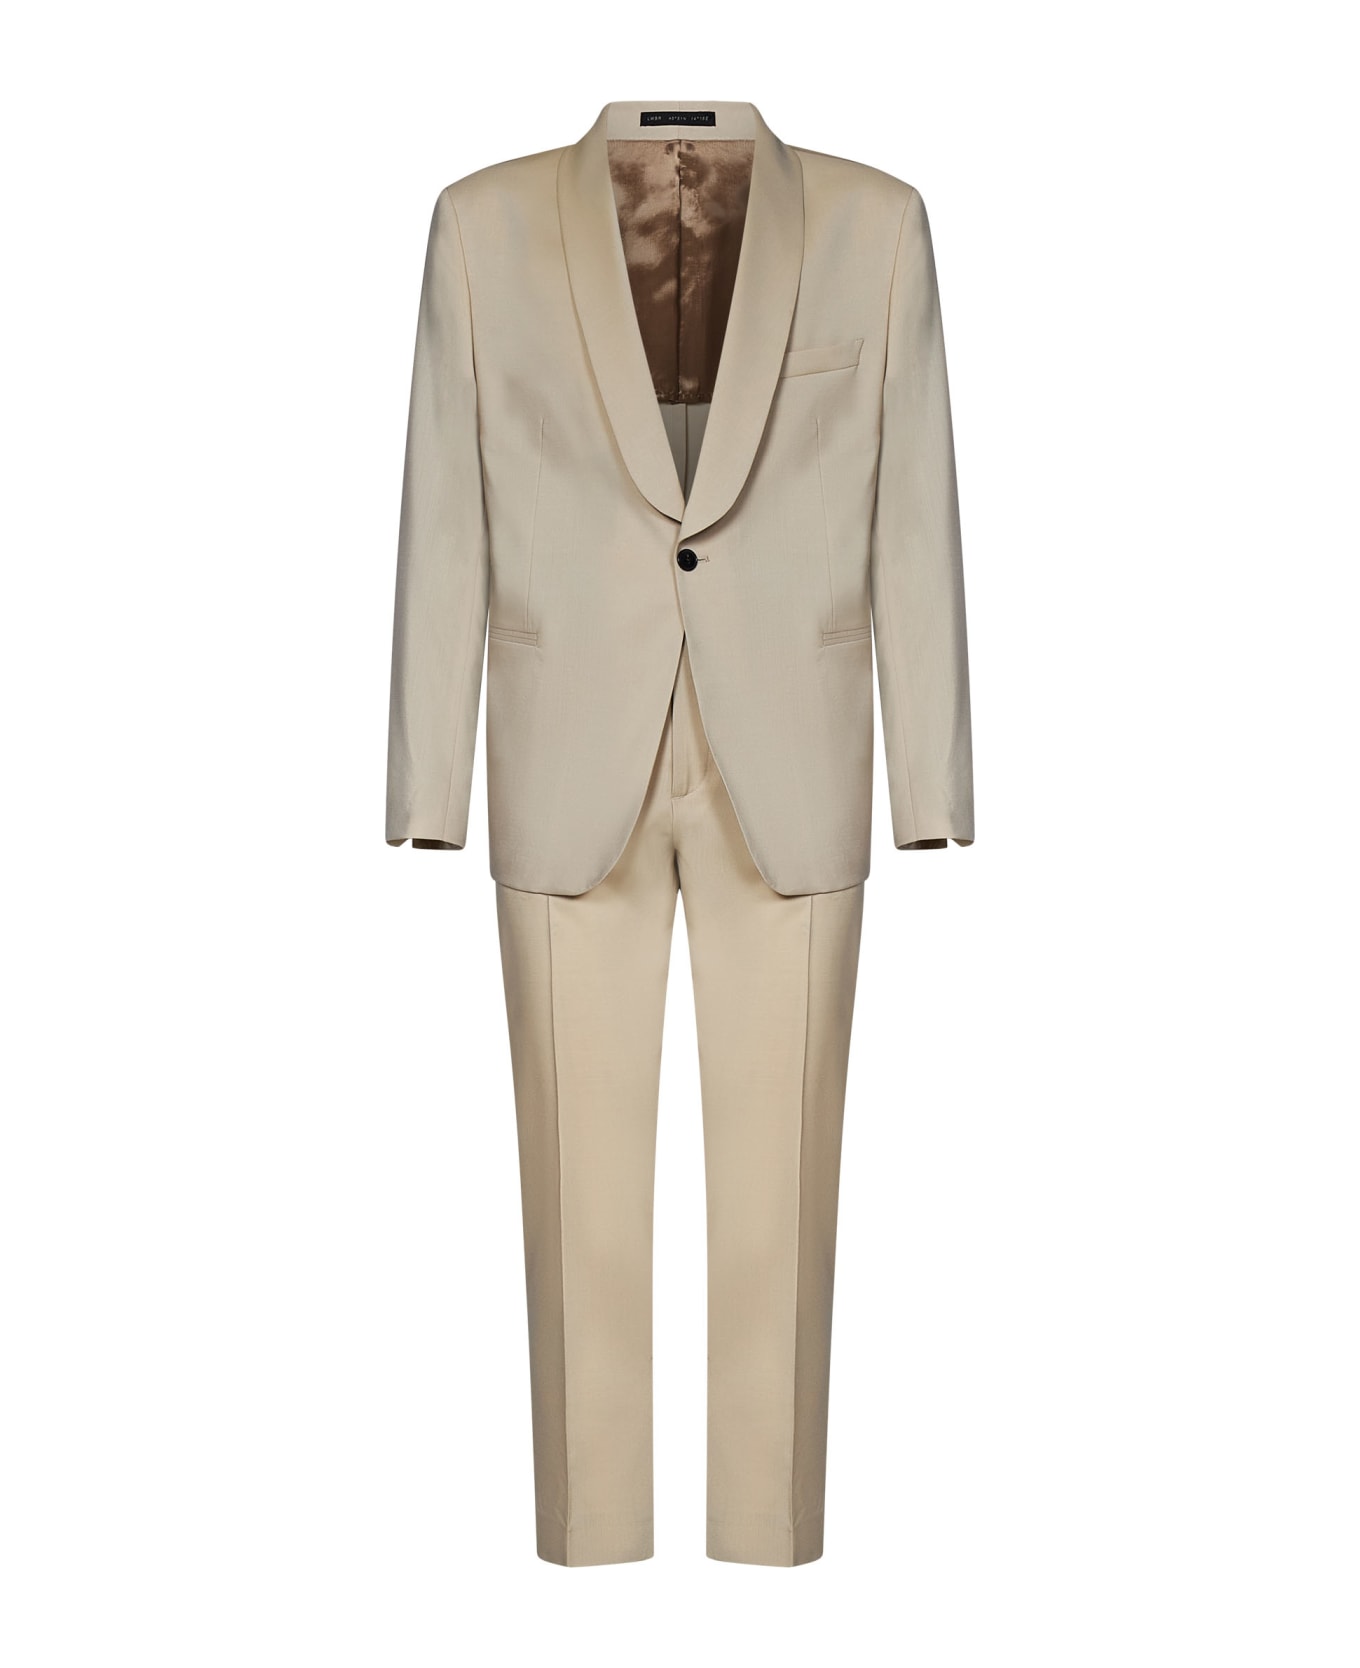 Low Brand 1b Evening Suit - Beige